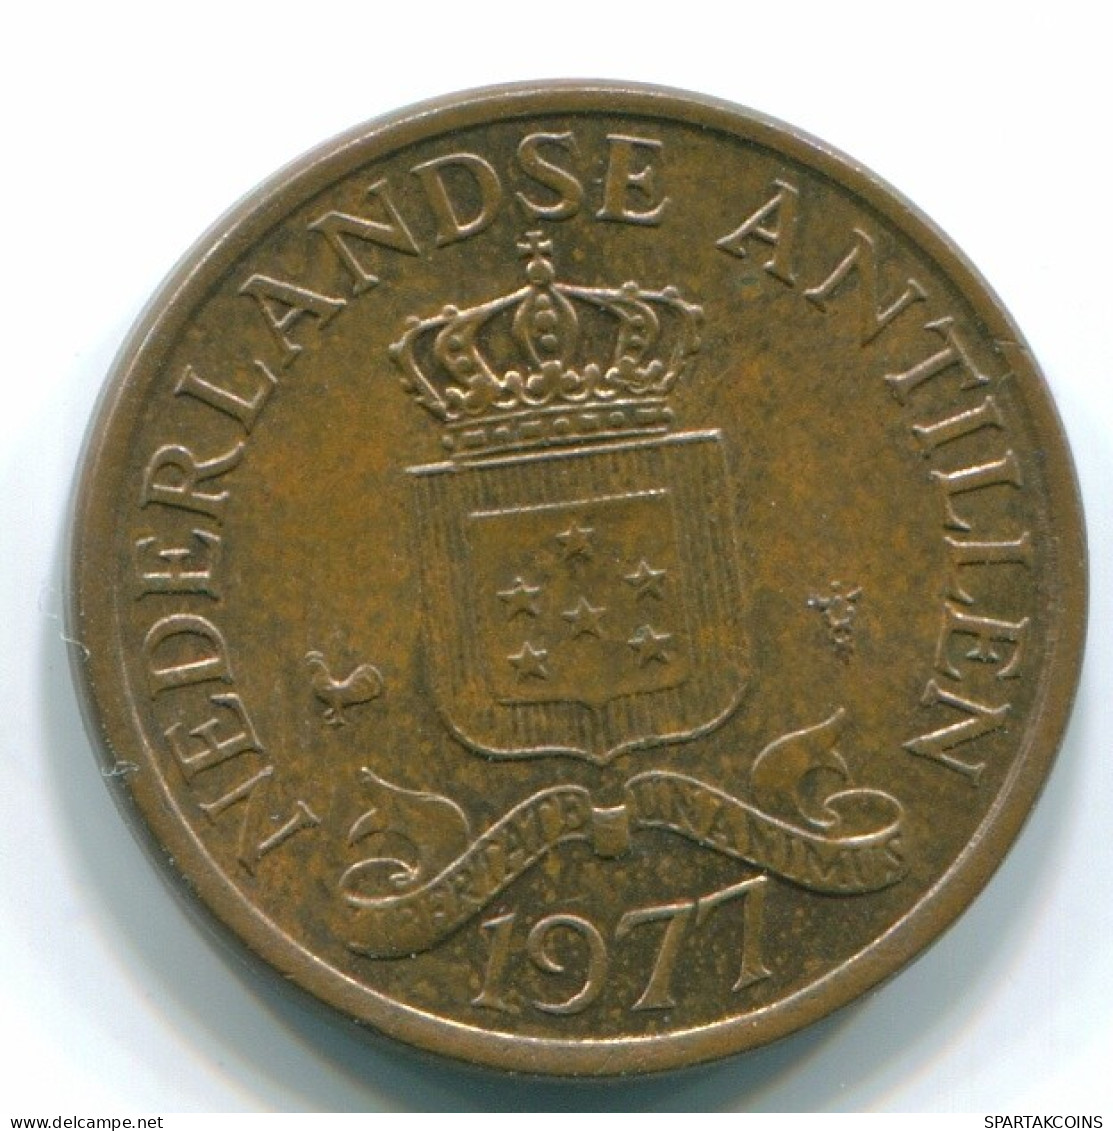 1 CENT 1977 NIEDERLÄNDISCHE ANTILLEN Bronze Koloniale Münze #S10713.D.A - Niederländische Antillen